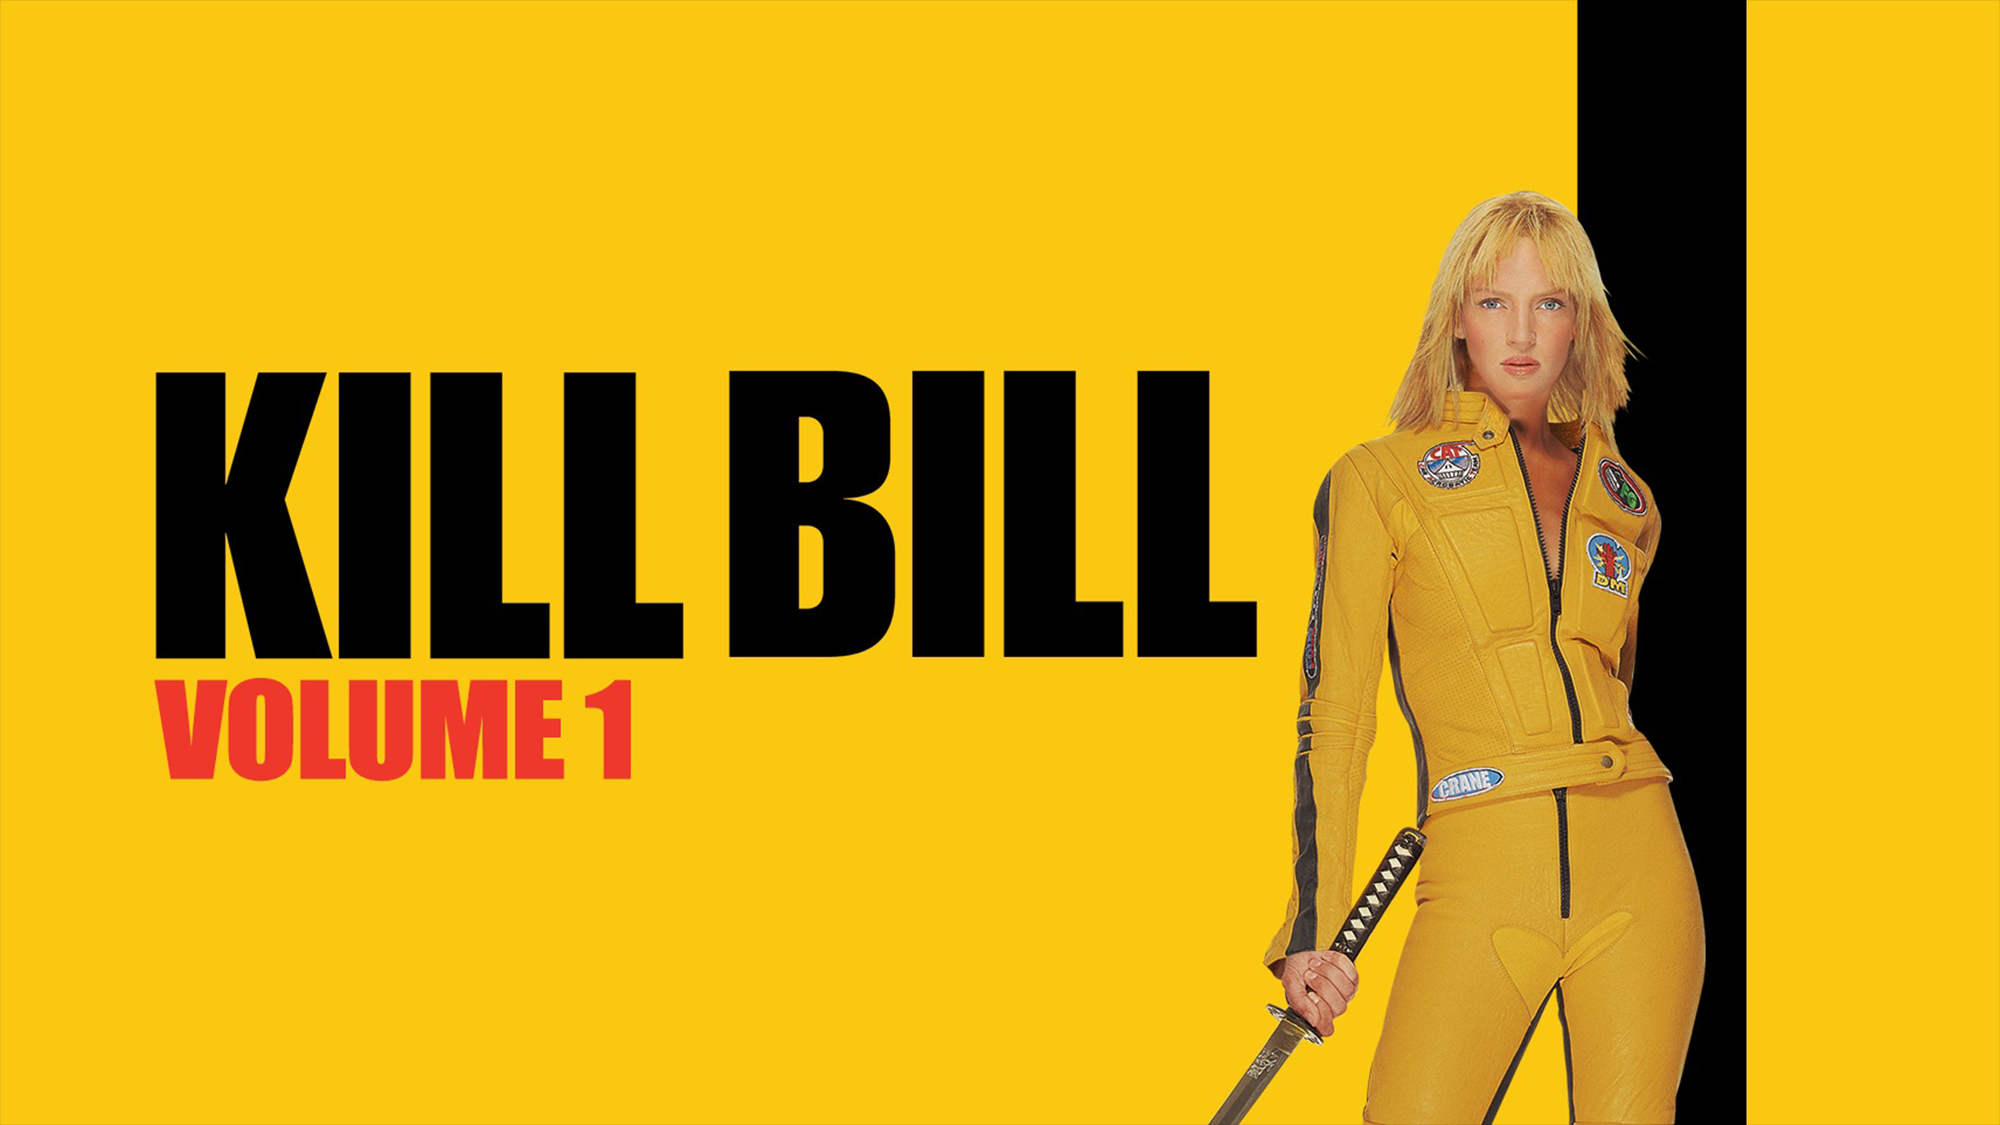 Kill Bill Vol 1 HD Wallpaper Background Image 2000x1125 2000x1125